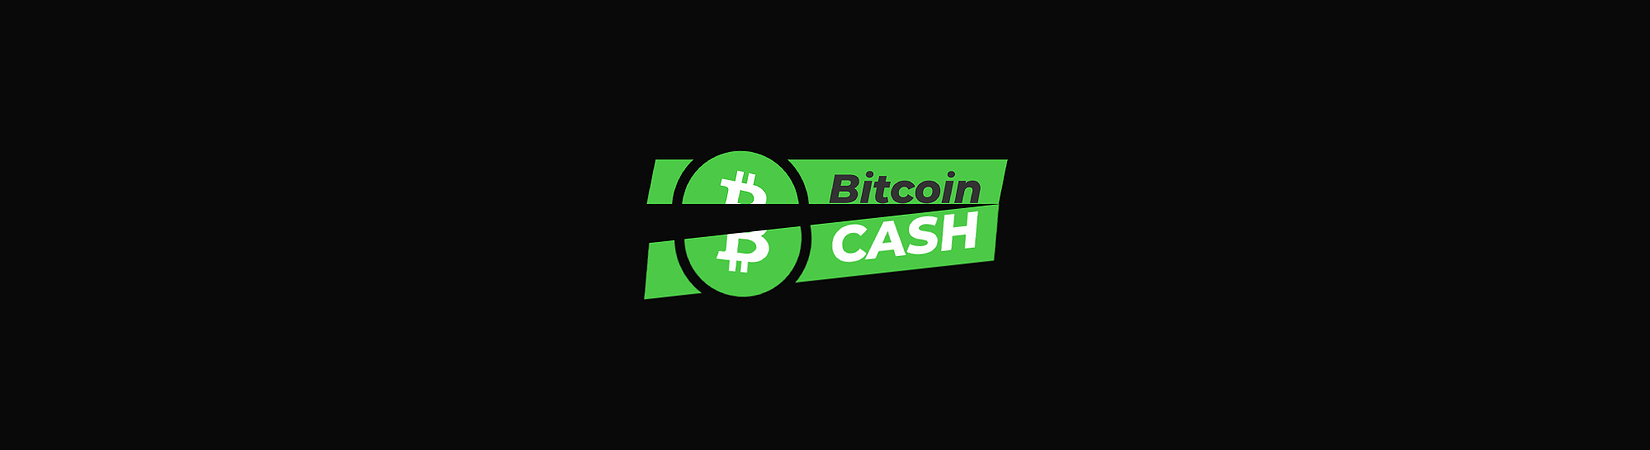 bitcoin cash hardfork atgalinis skaičiavimas